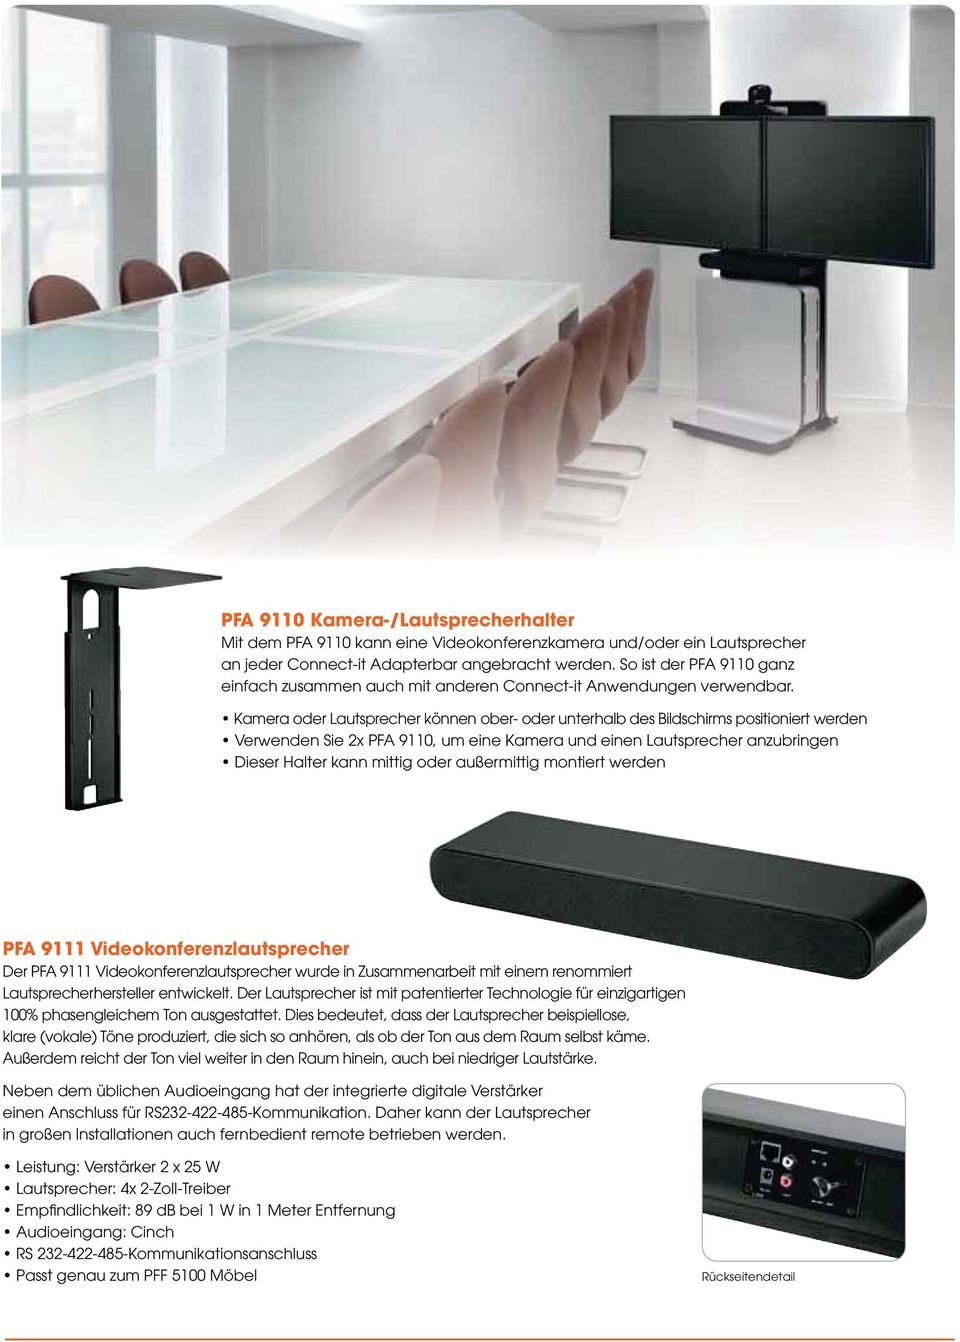 PFA 9111 Videokonferenzlautsprecher Der PFA 9111 Videokonferenzlautsprecher wurde in Zusammenarbeit mit einem renommiert Lautsprecherhersteller entwickelt.